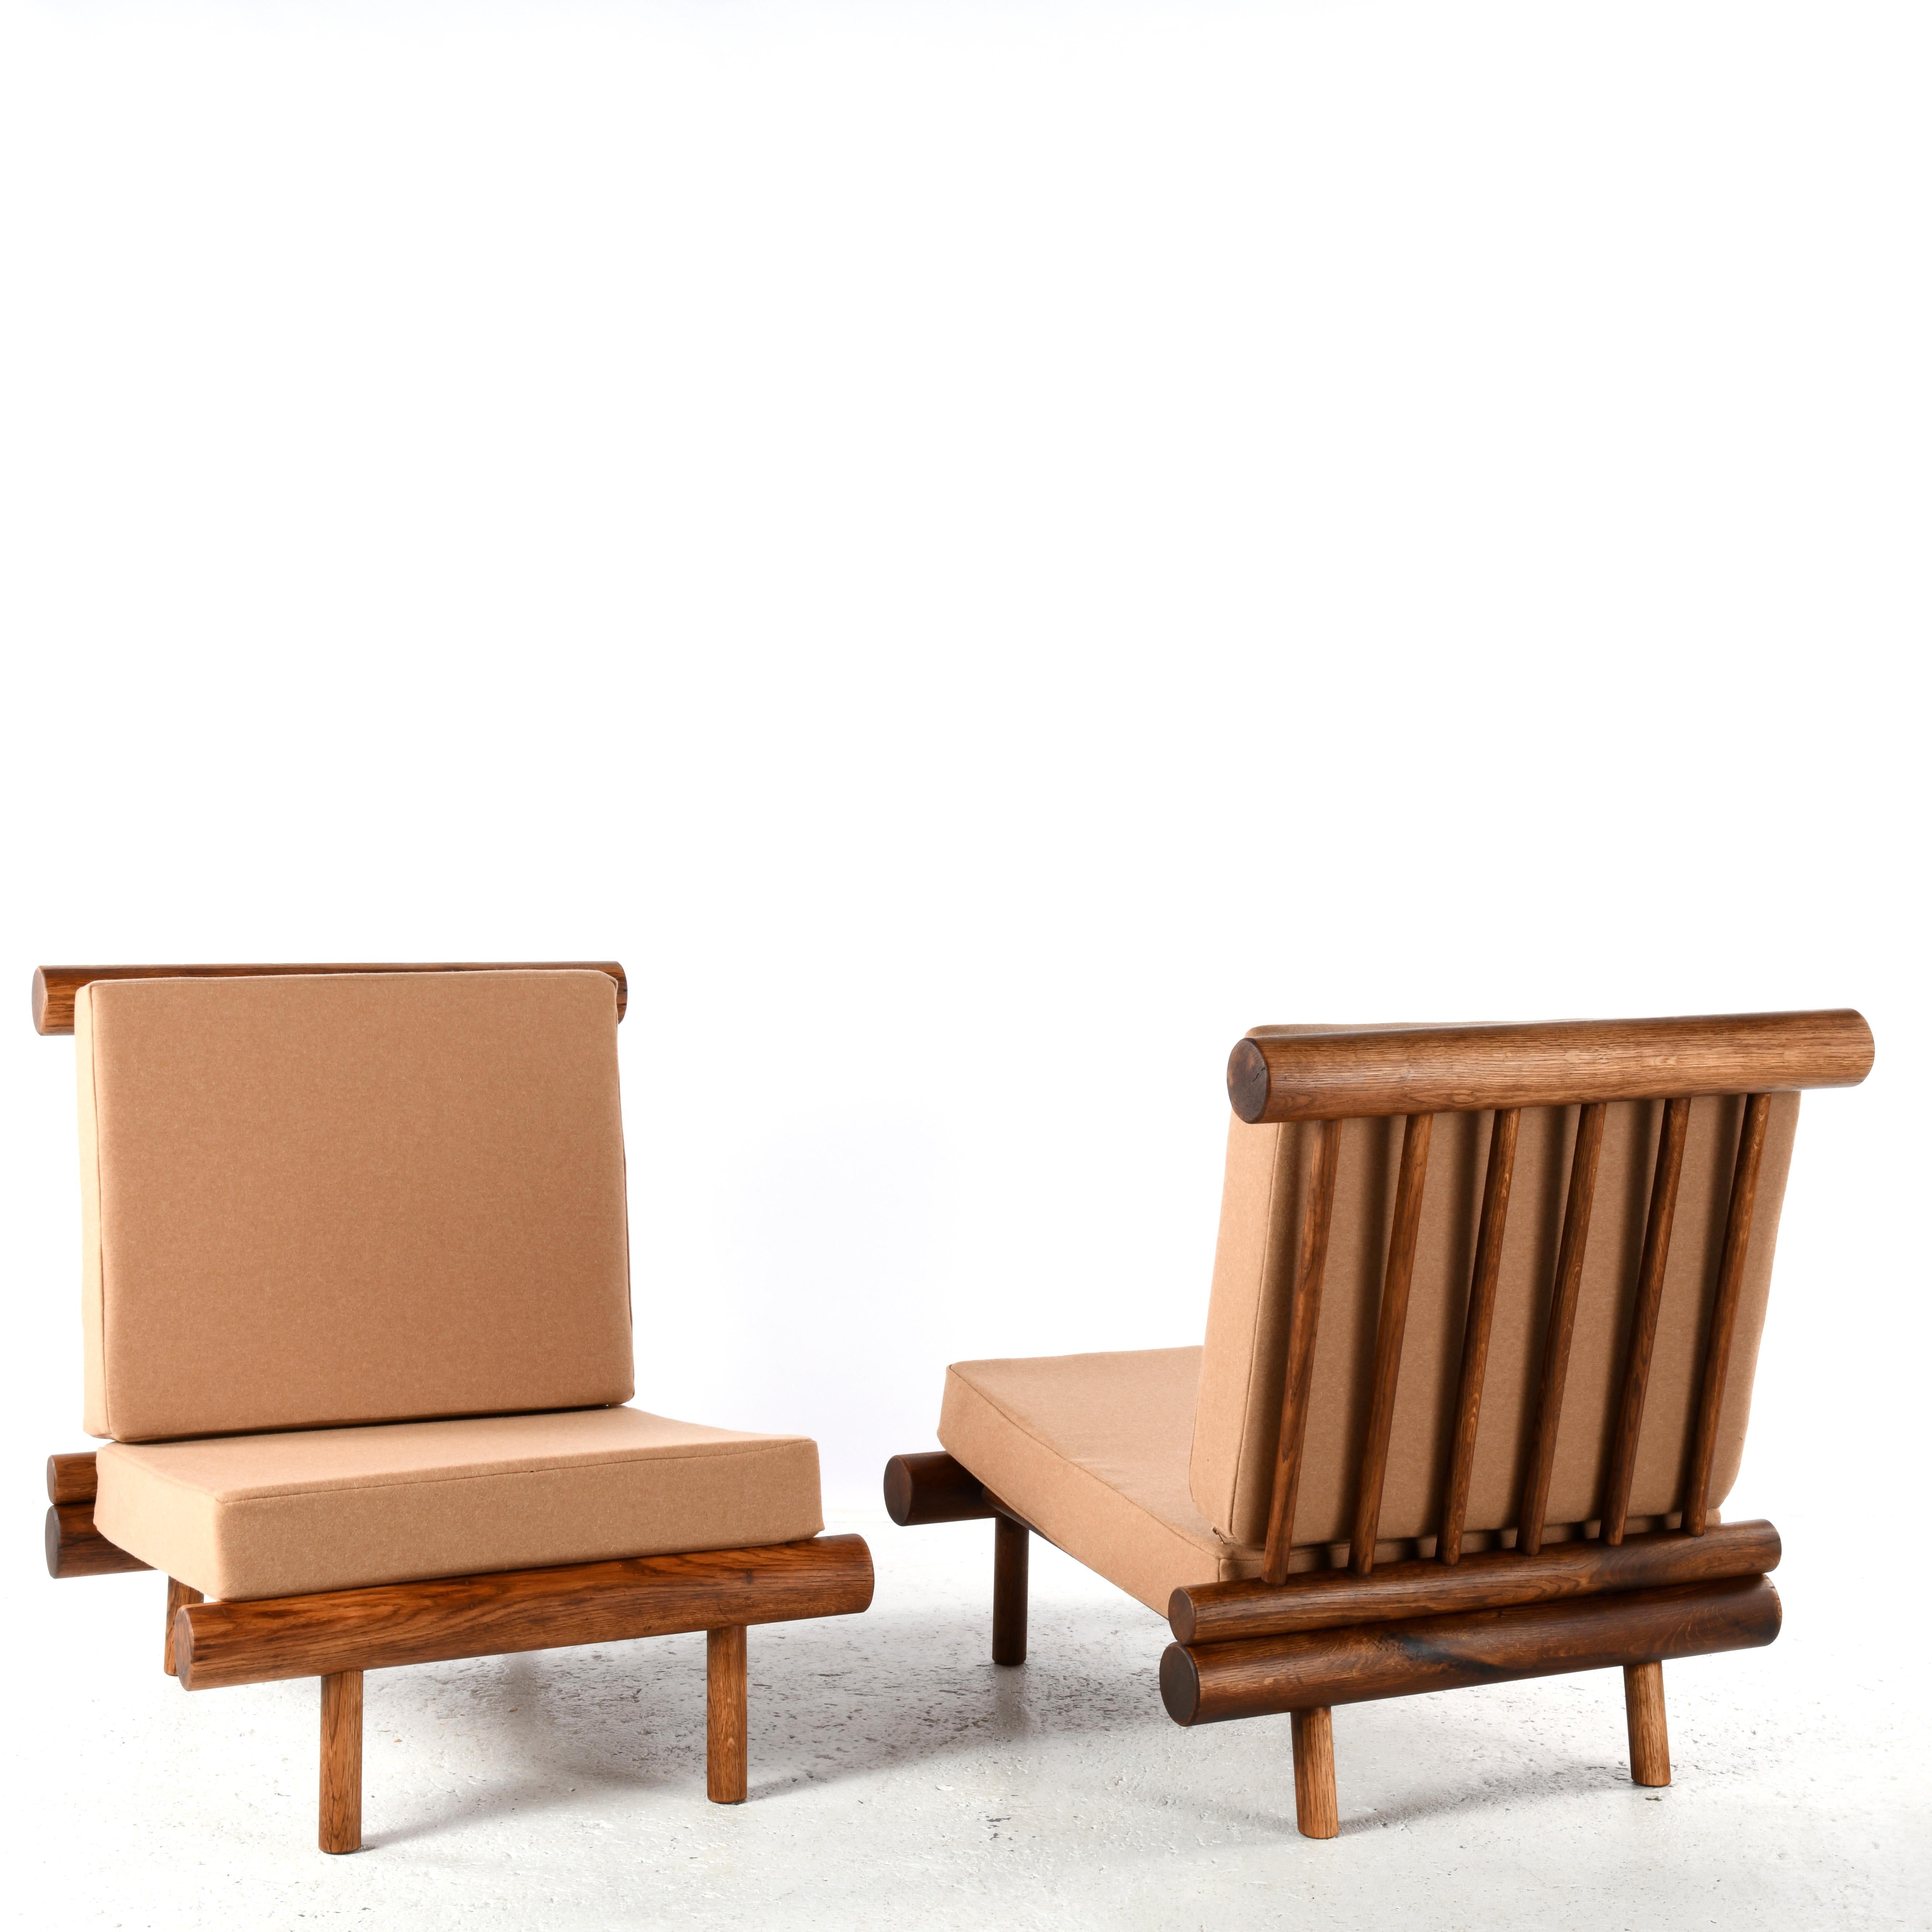 Paire de chaises de cheminée en chêne attribuées à Charlotte Perriand. Ces chaises proviennent de la résidence La Cachette, située dans la station de ski Les Arcs 1600 dans les Alpes françaises. Charlotte Perriand, célèbre architecte et designer